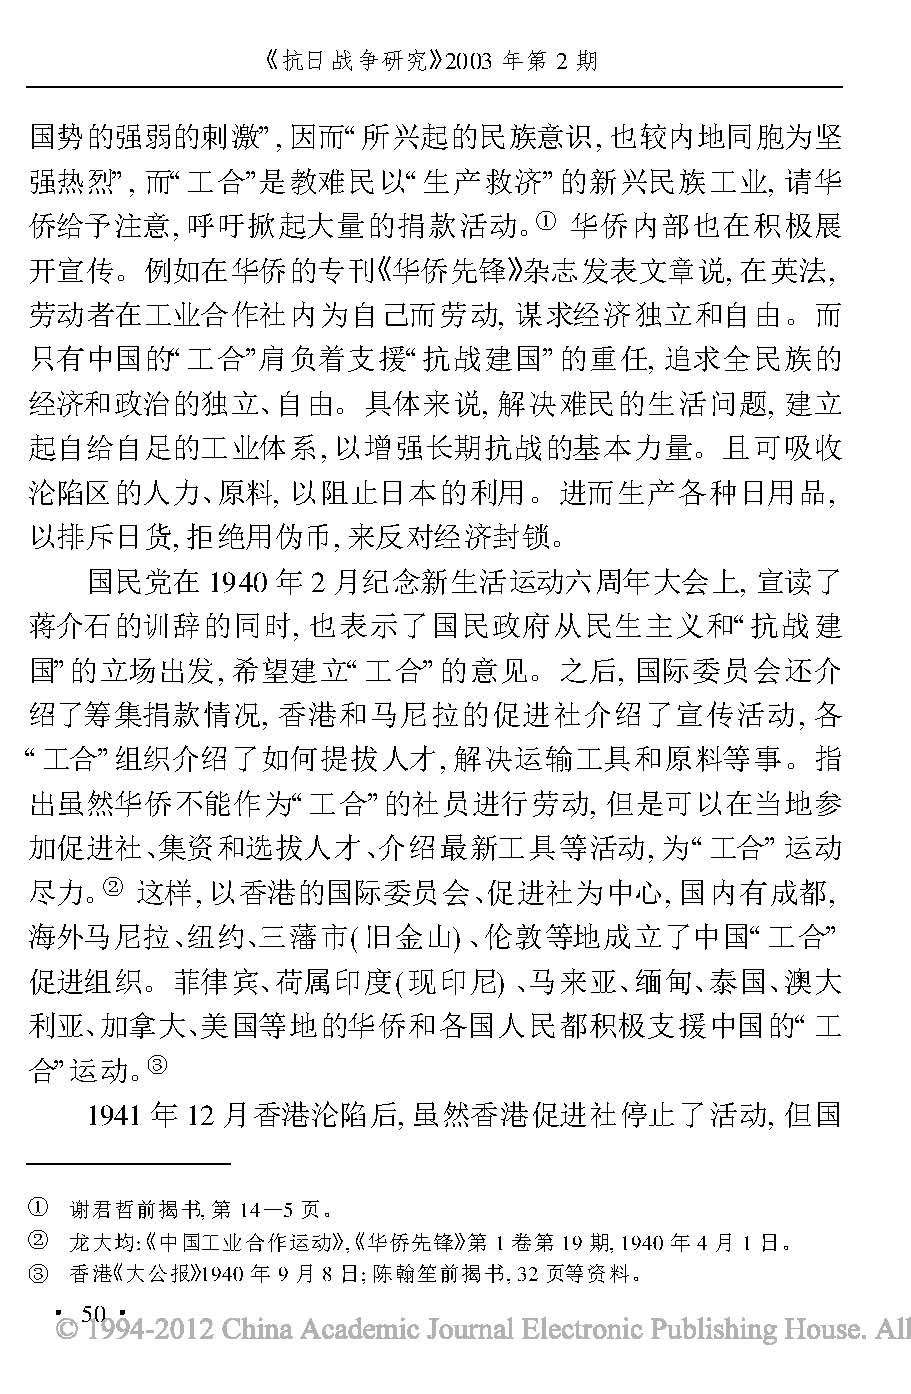 抗日战争时期的华侨和中国工业合作运动_页面_07.jpg